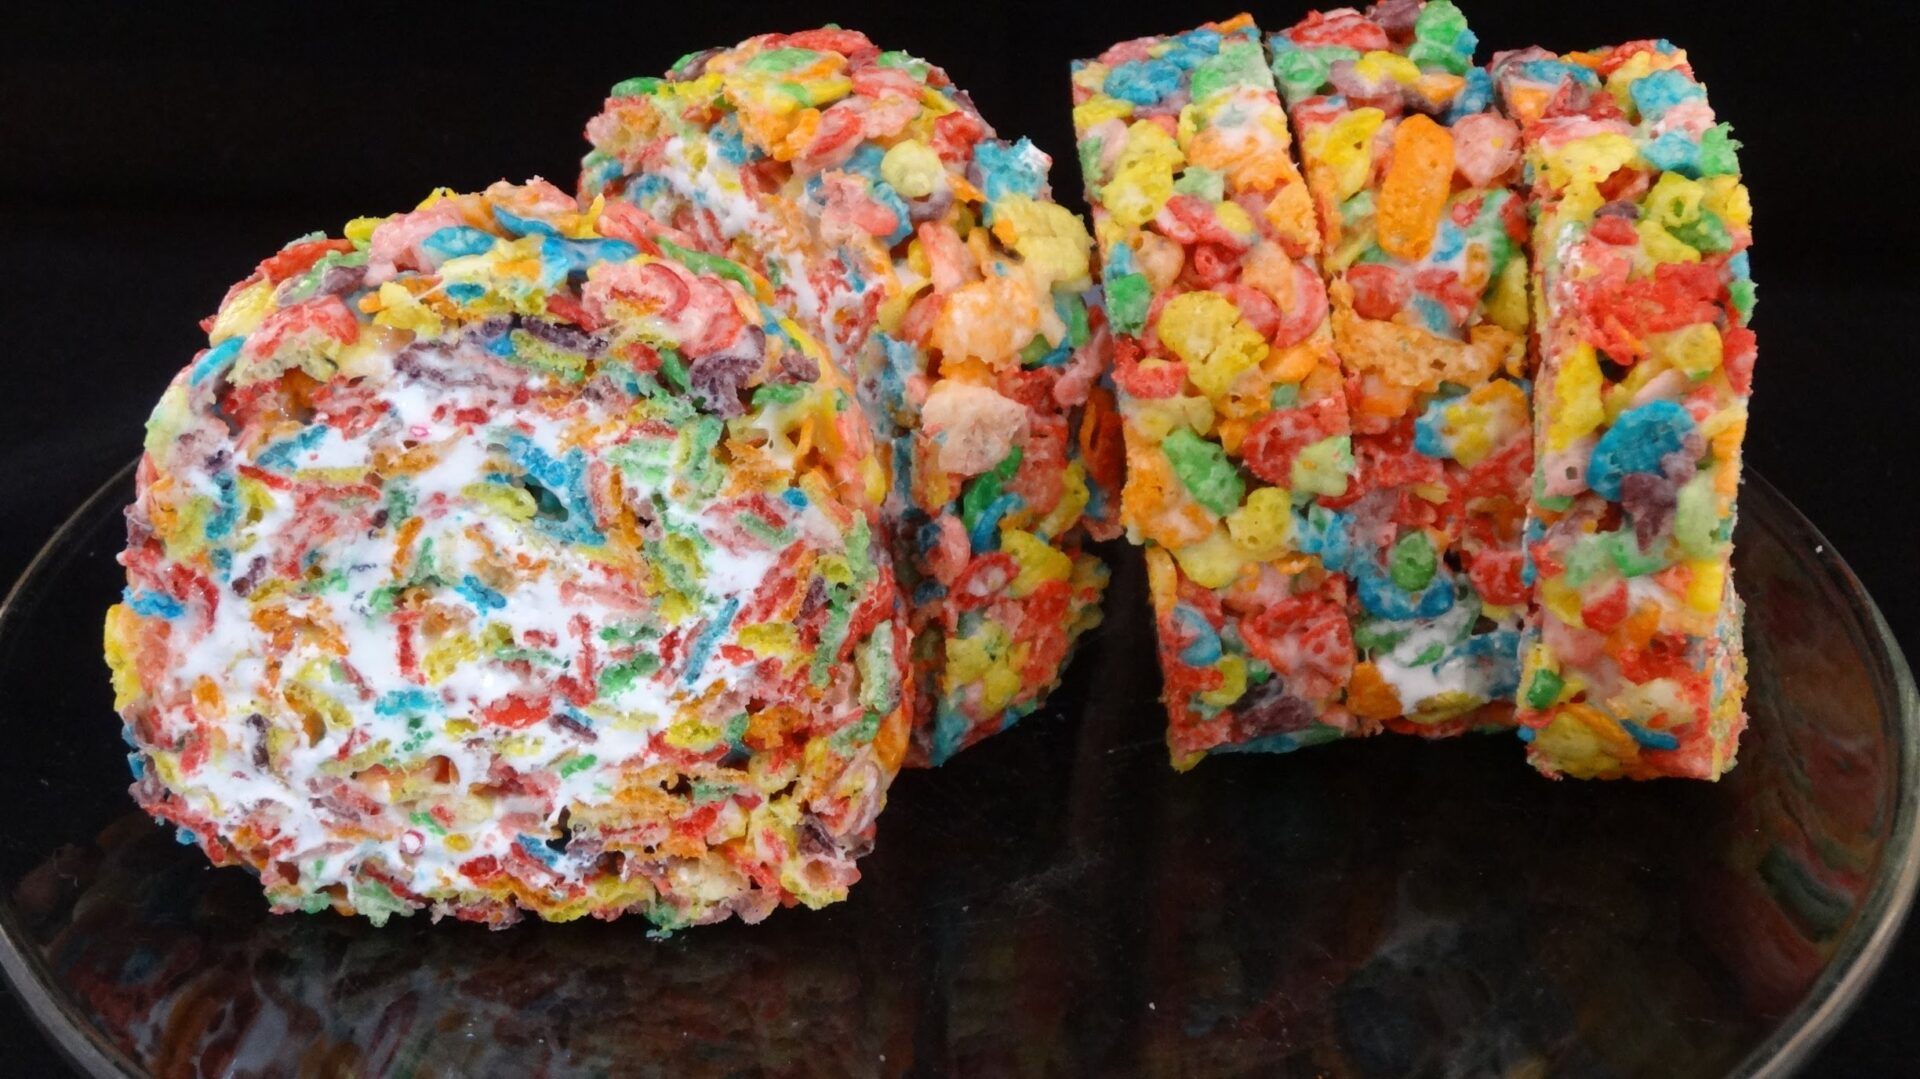 Fruity Pebble Rainbow Cereal Treats